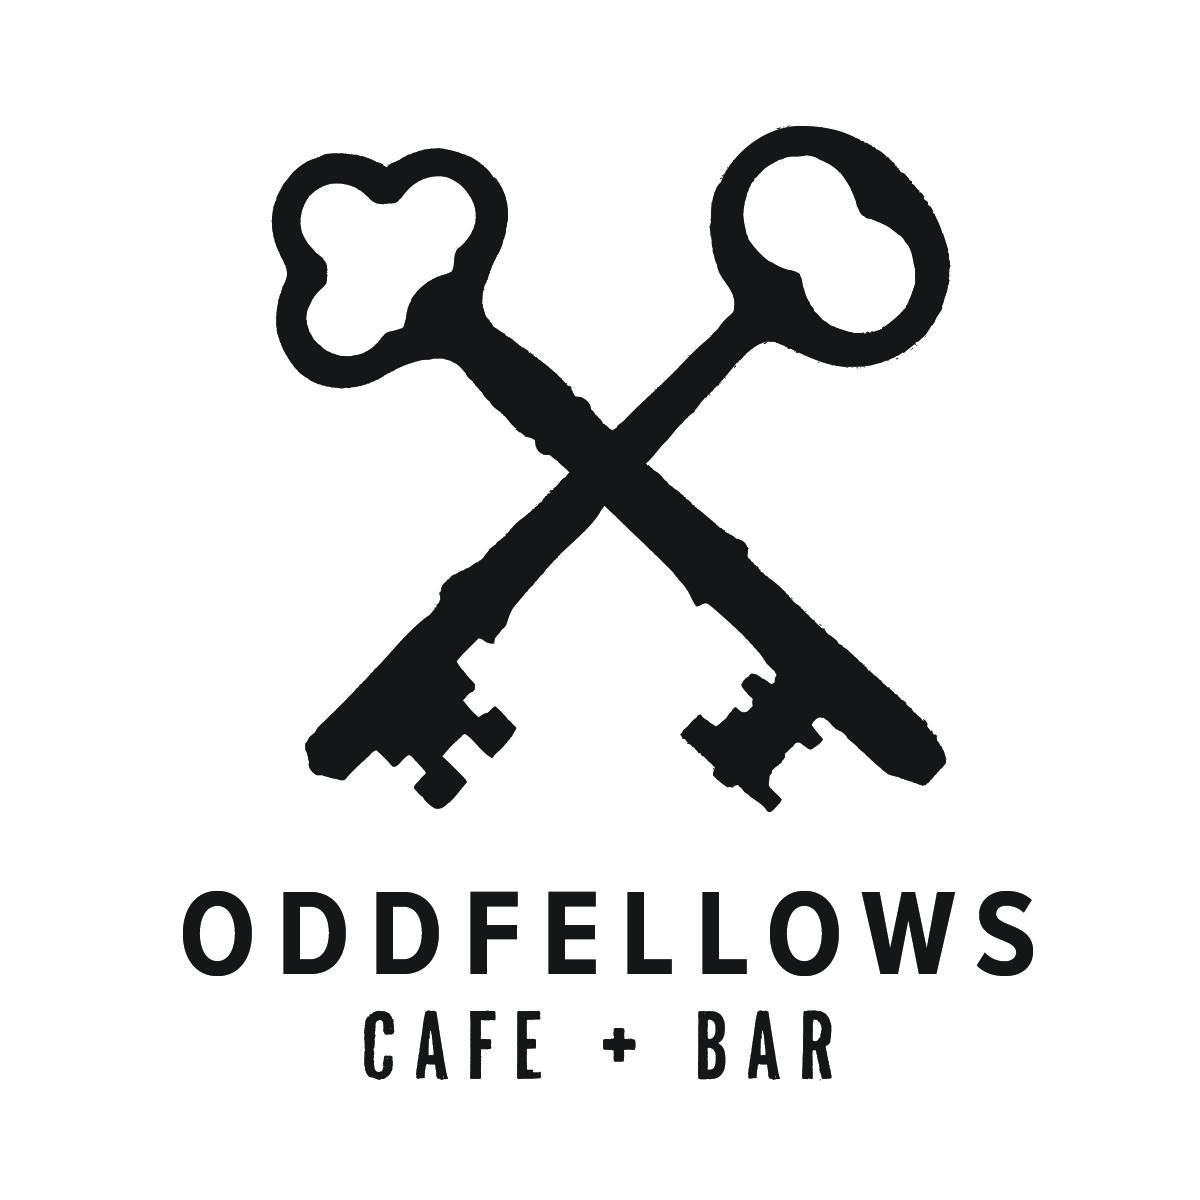 Company logo of Oddfellows Café + Bar